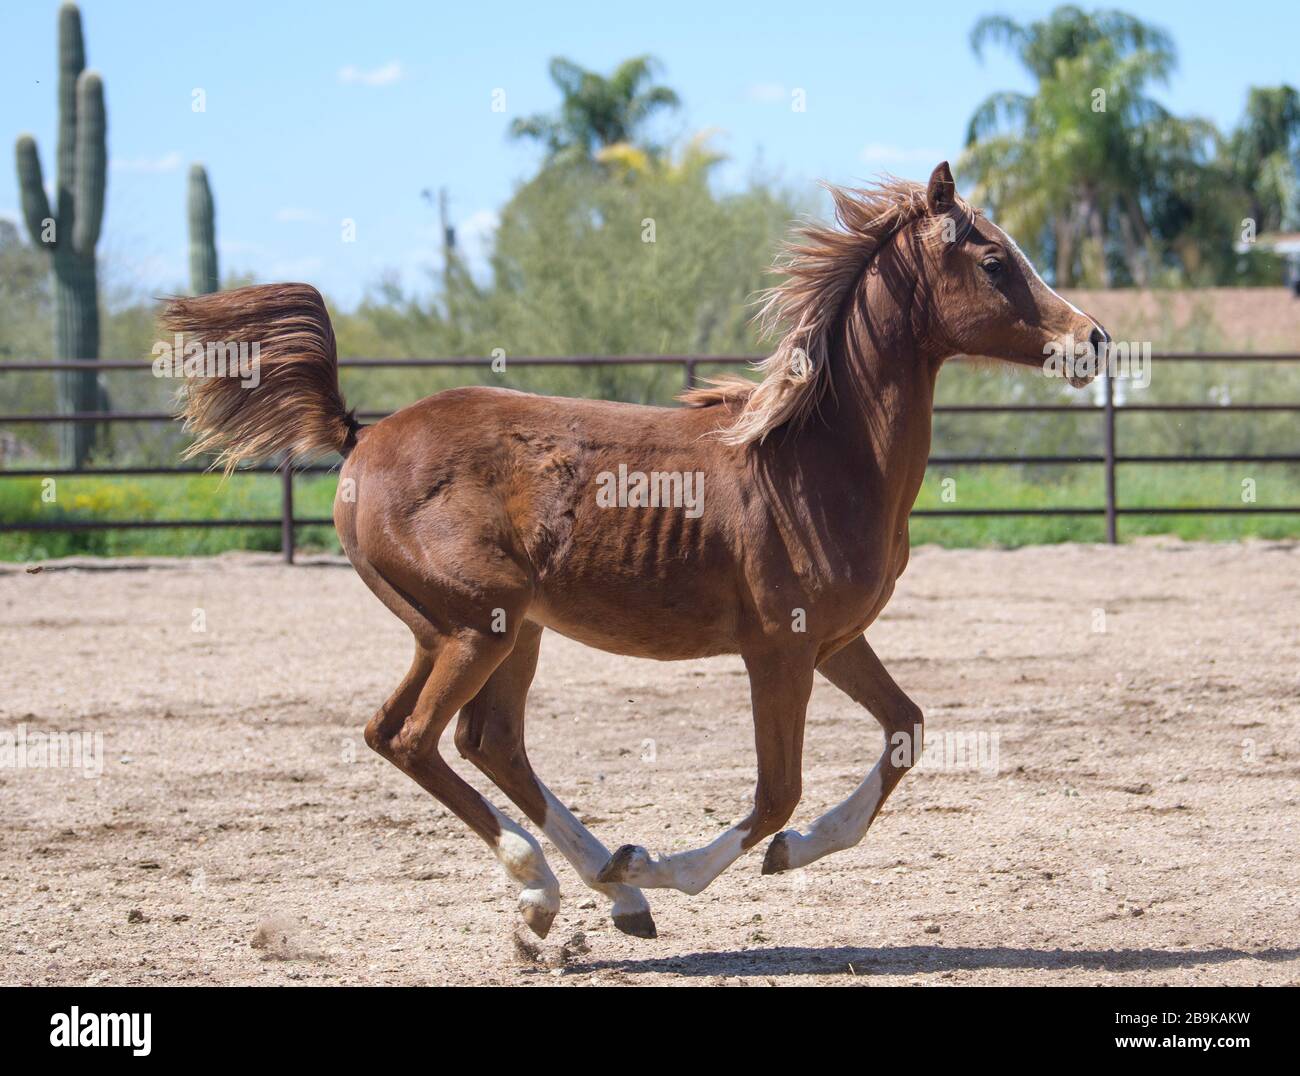 Brown Arabian horse running around an arena Stock Photo